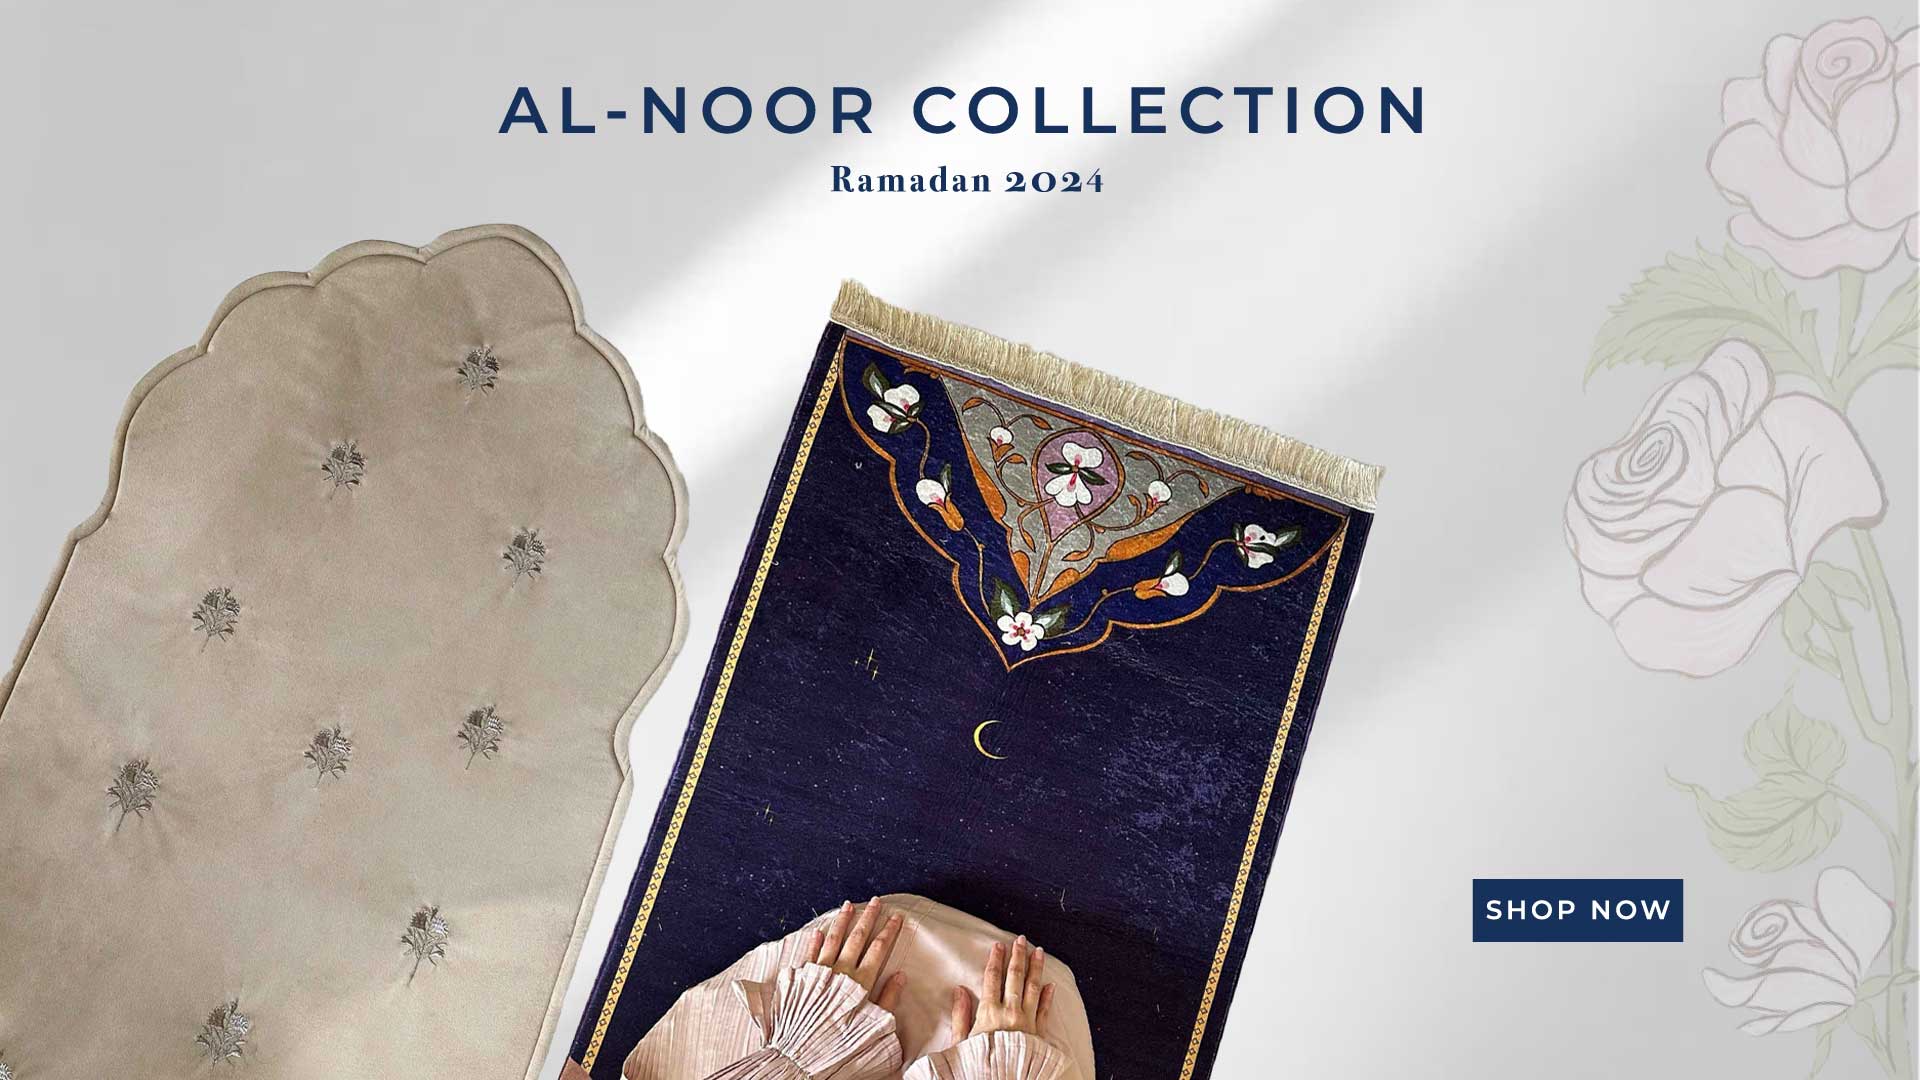 Al-Noor collection